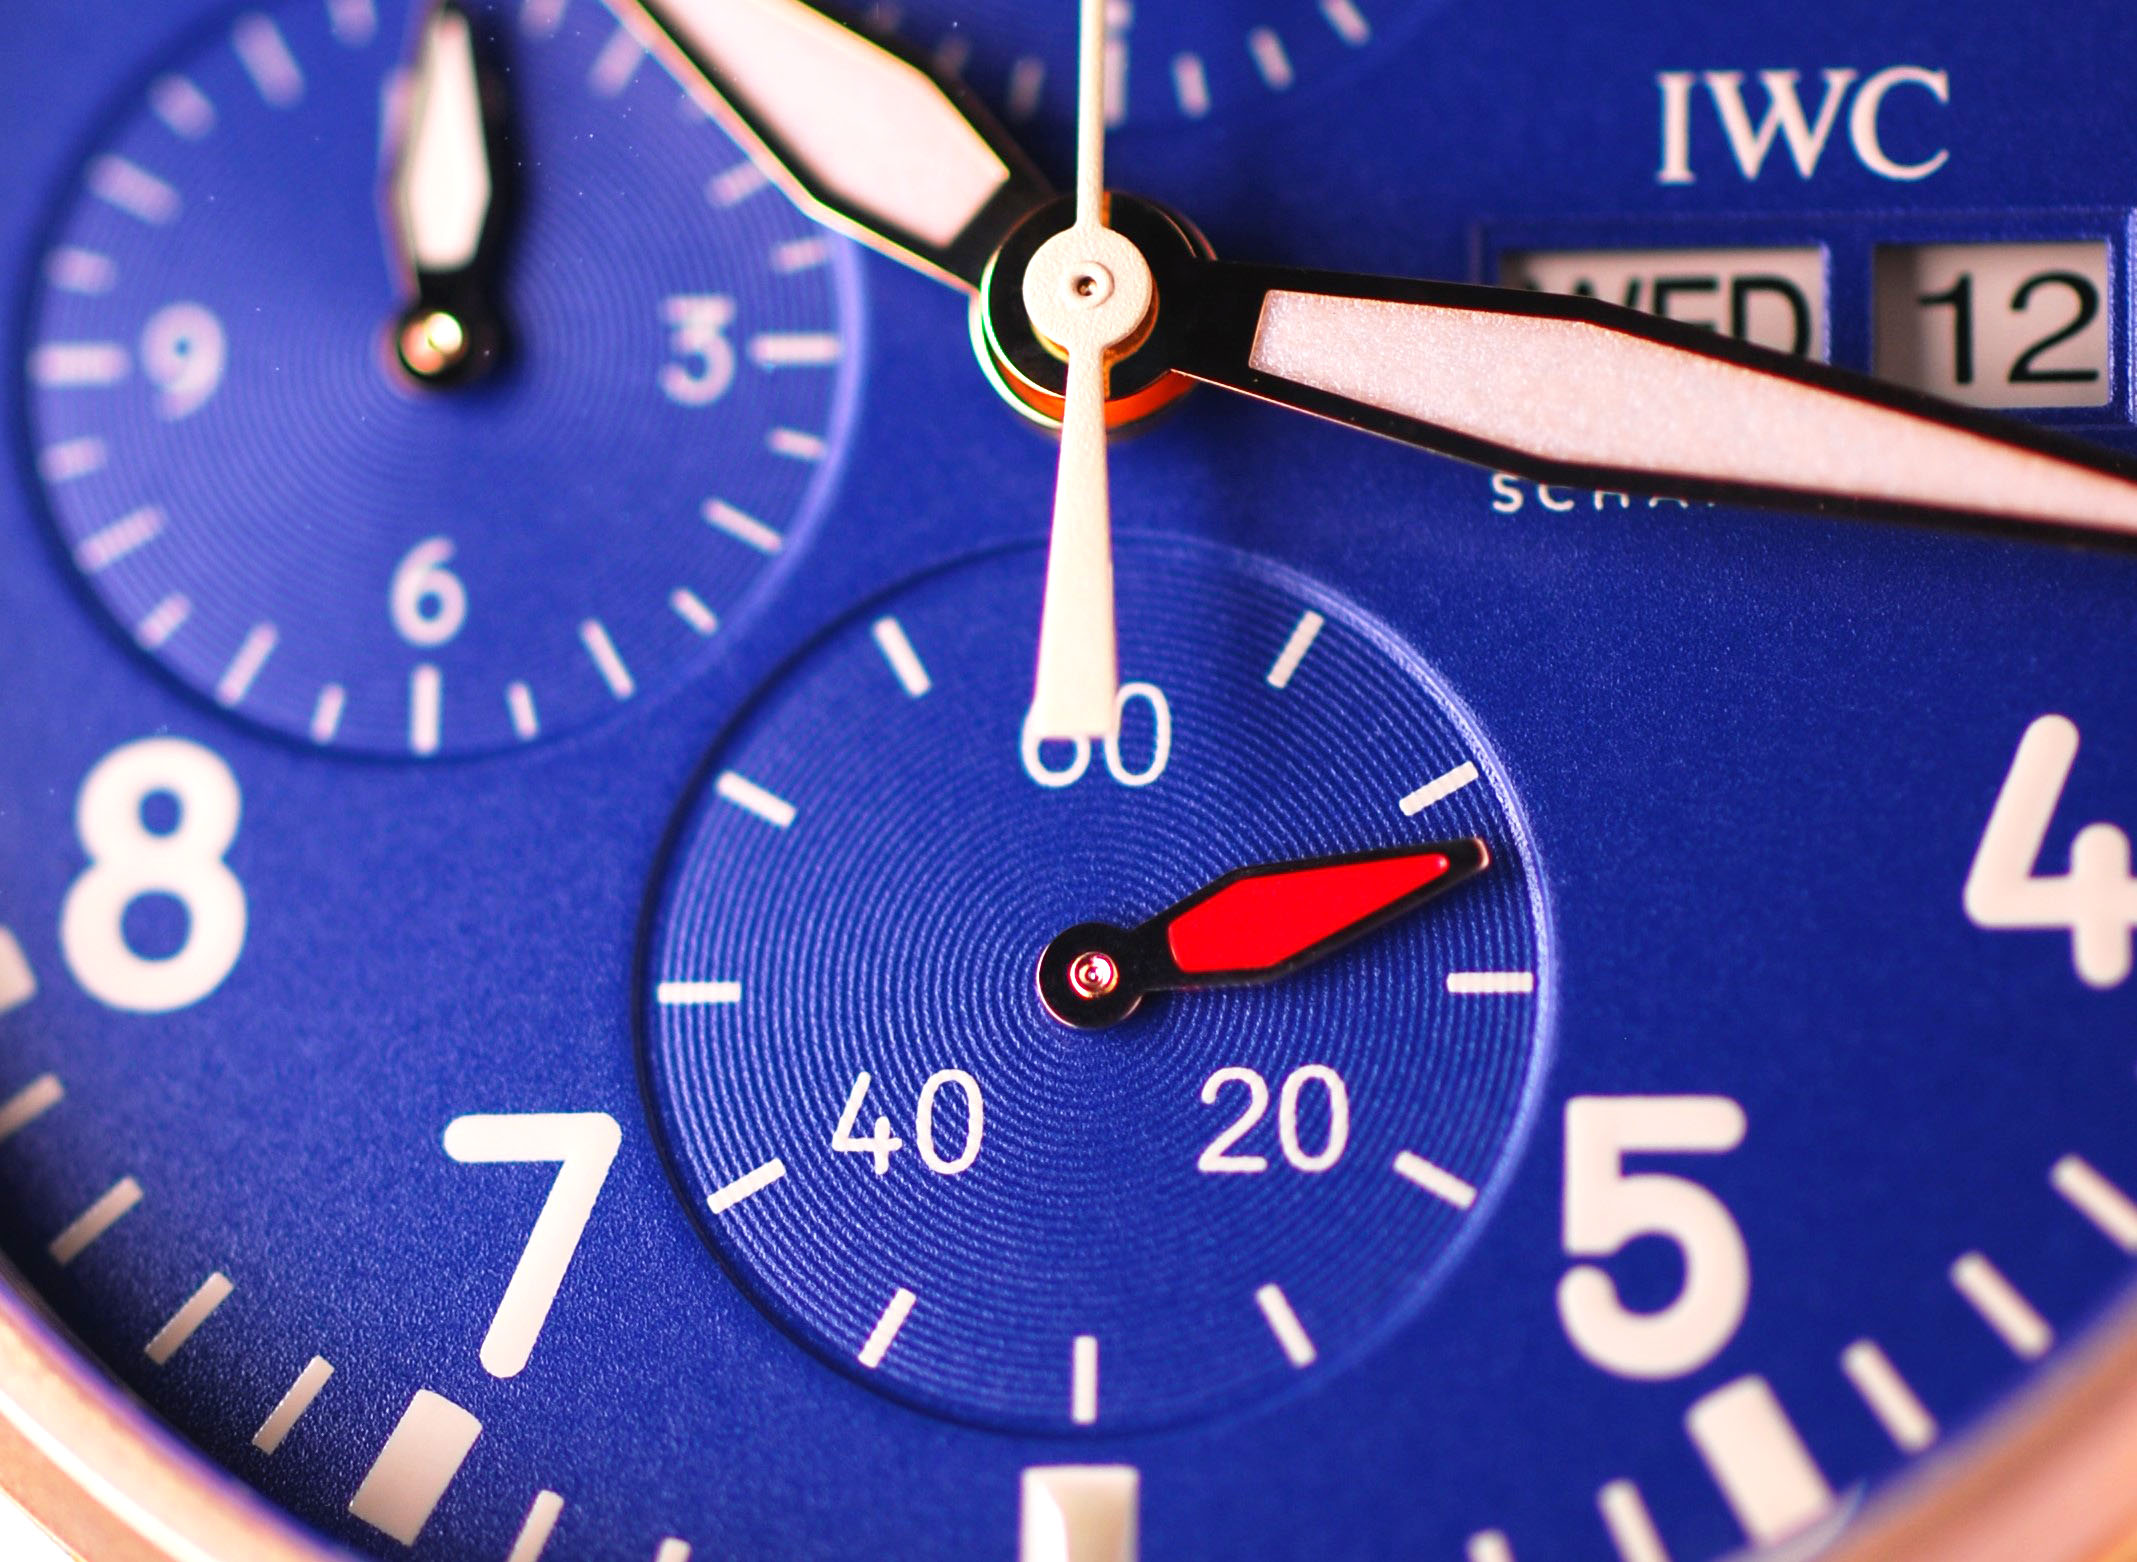 Nahaufnahme der kleinen Sekunde des IWC Pilot´s Watch Chronographen mit blauem Zifferblatt und Gehäuse aus Bronze